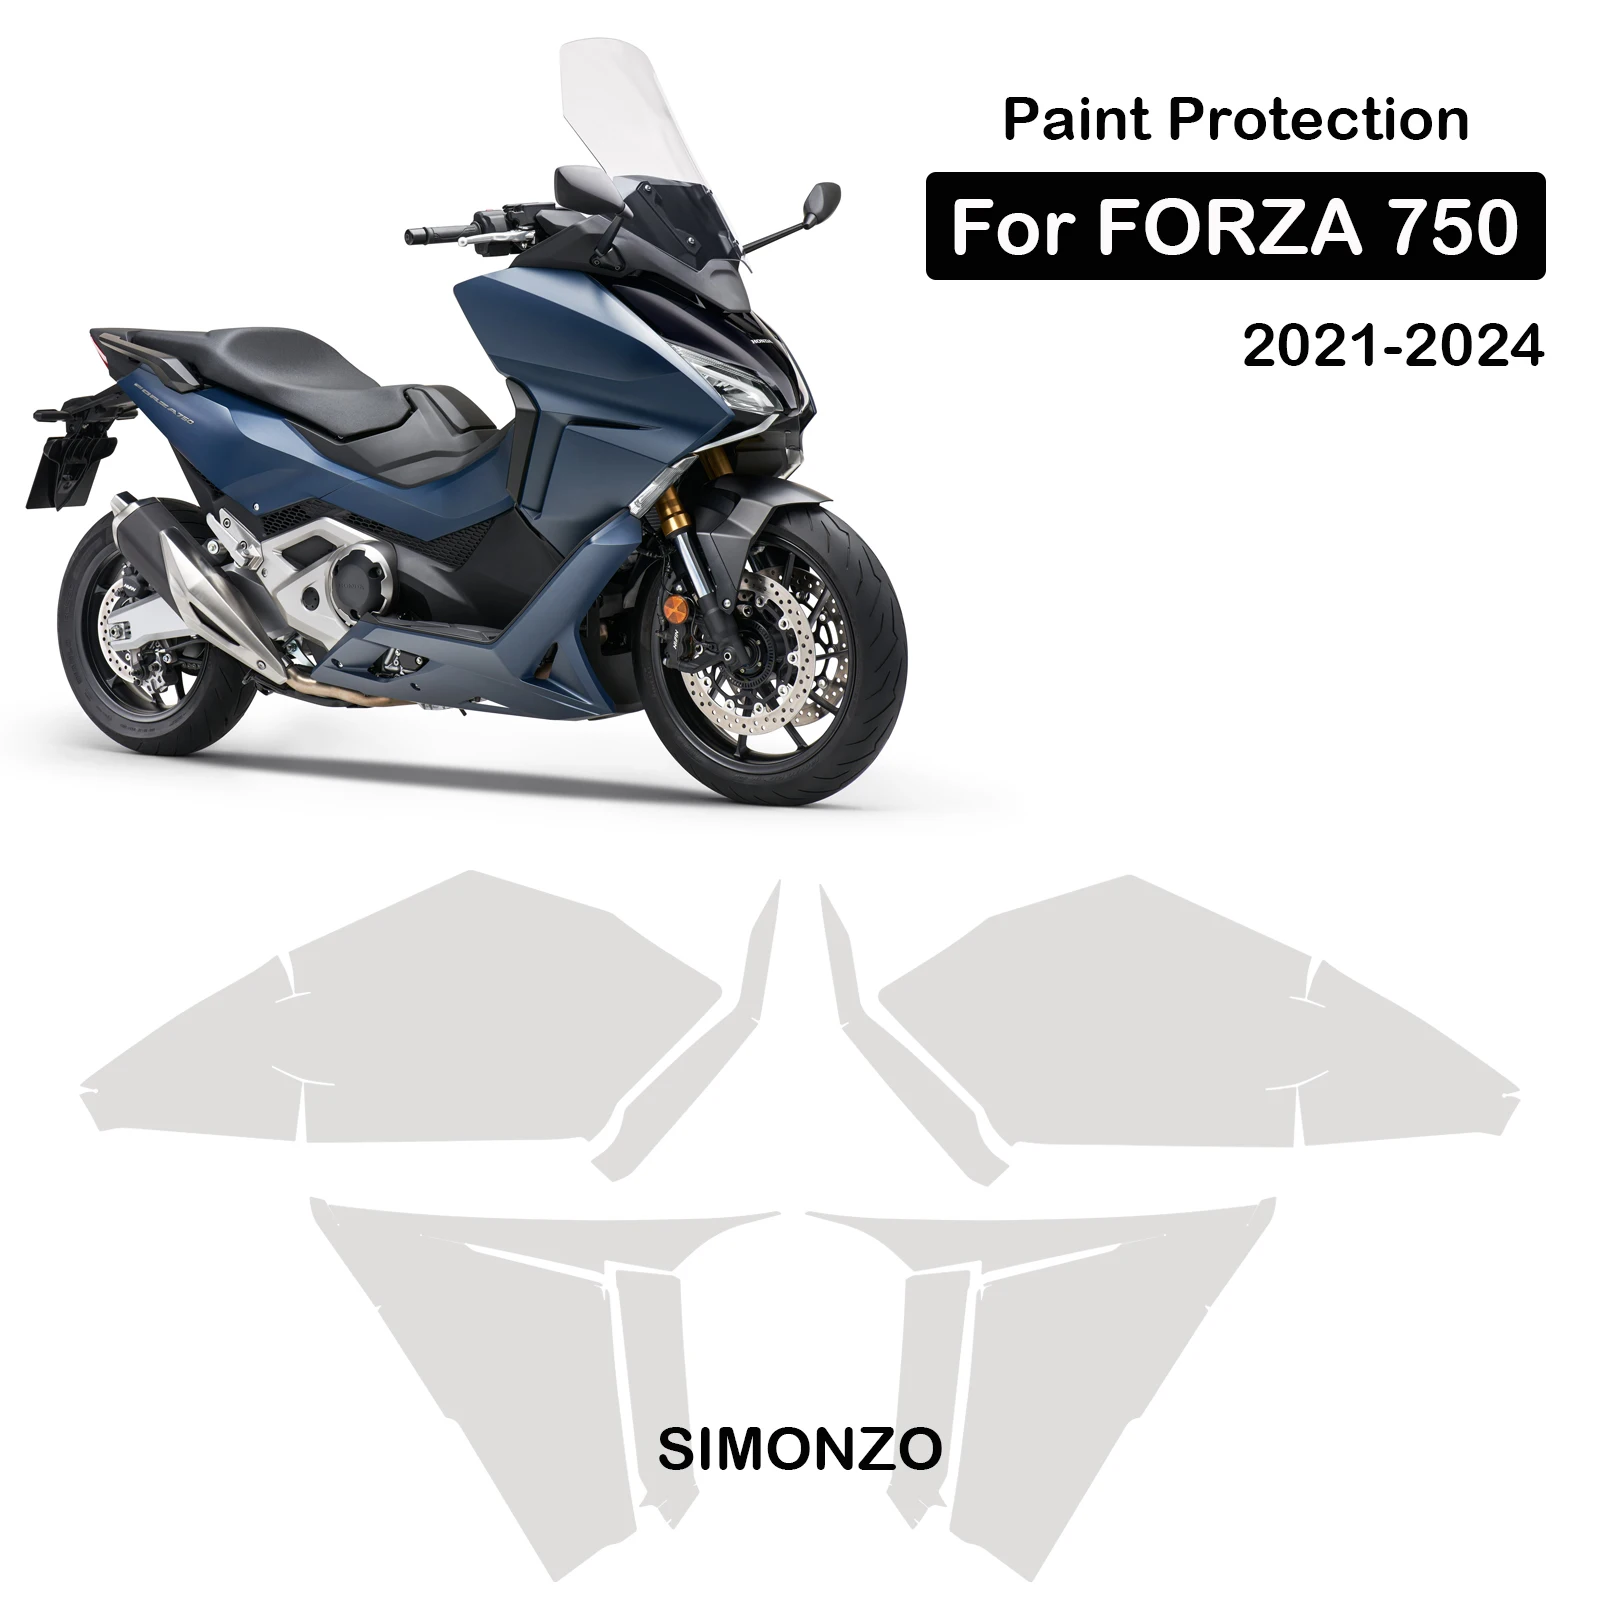 moto-ppf-per-forza-750-protezione-vernice-tpu-carenatura-pellicola-protettiva-antigraffio-2021-2024